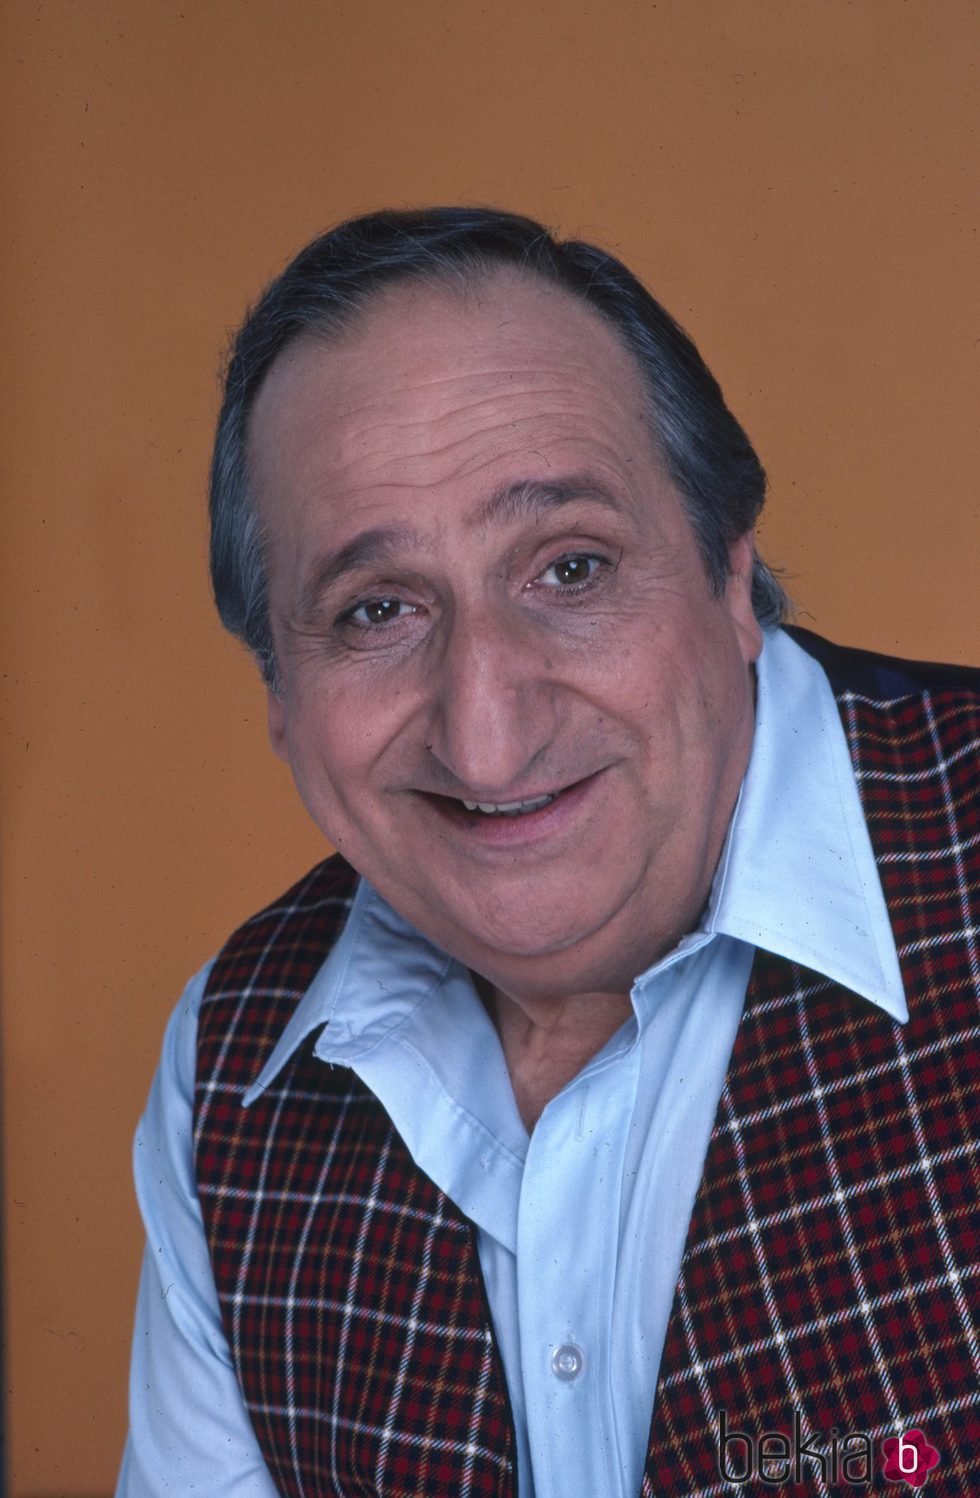 Al Molinaro, actor de 'Días felices'